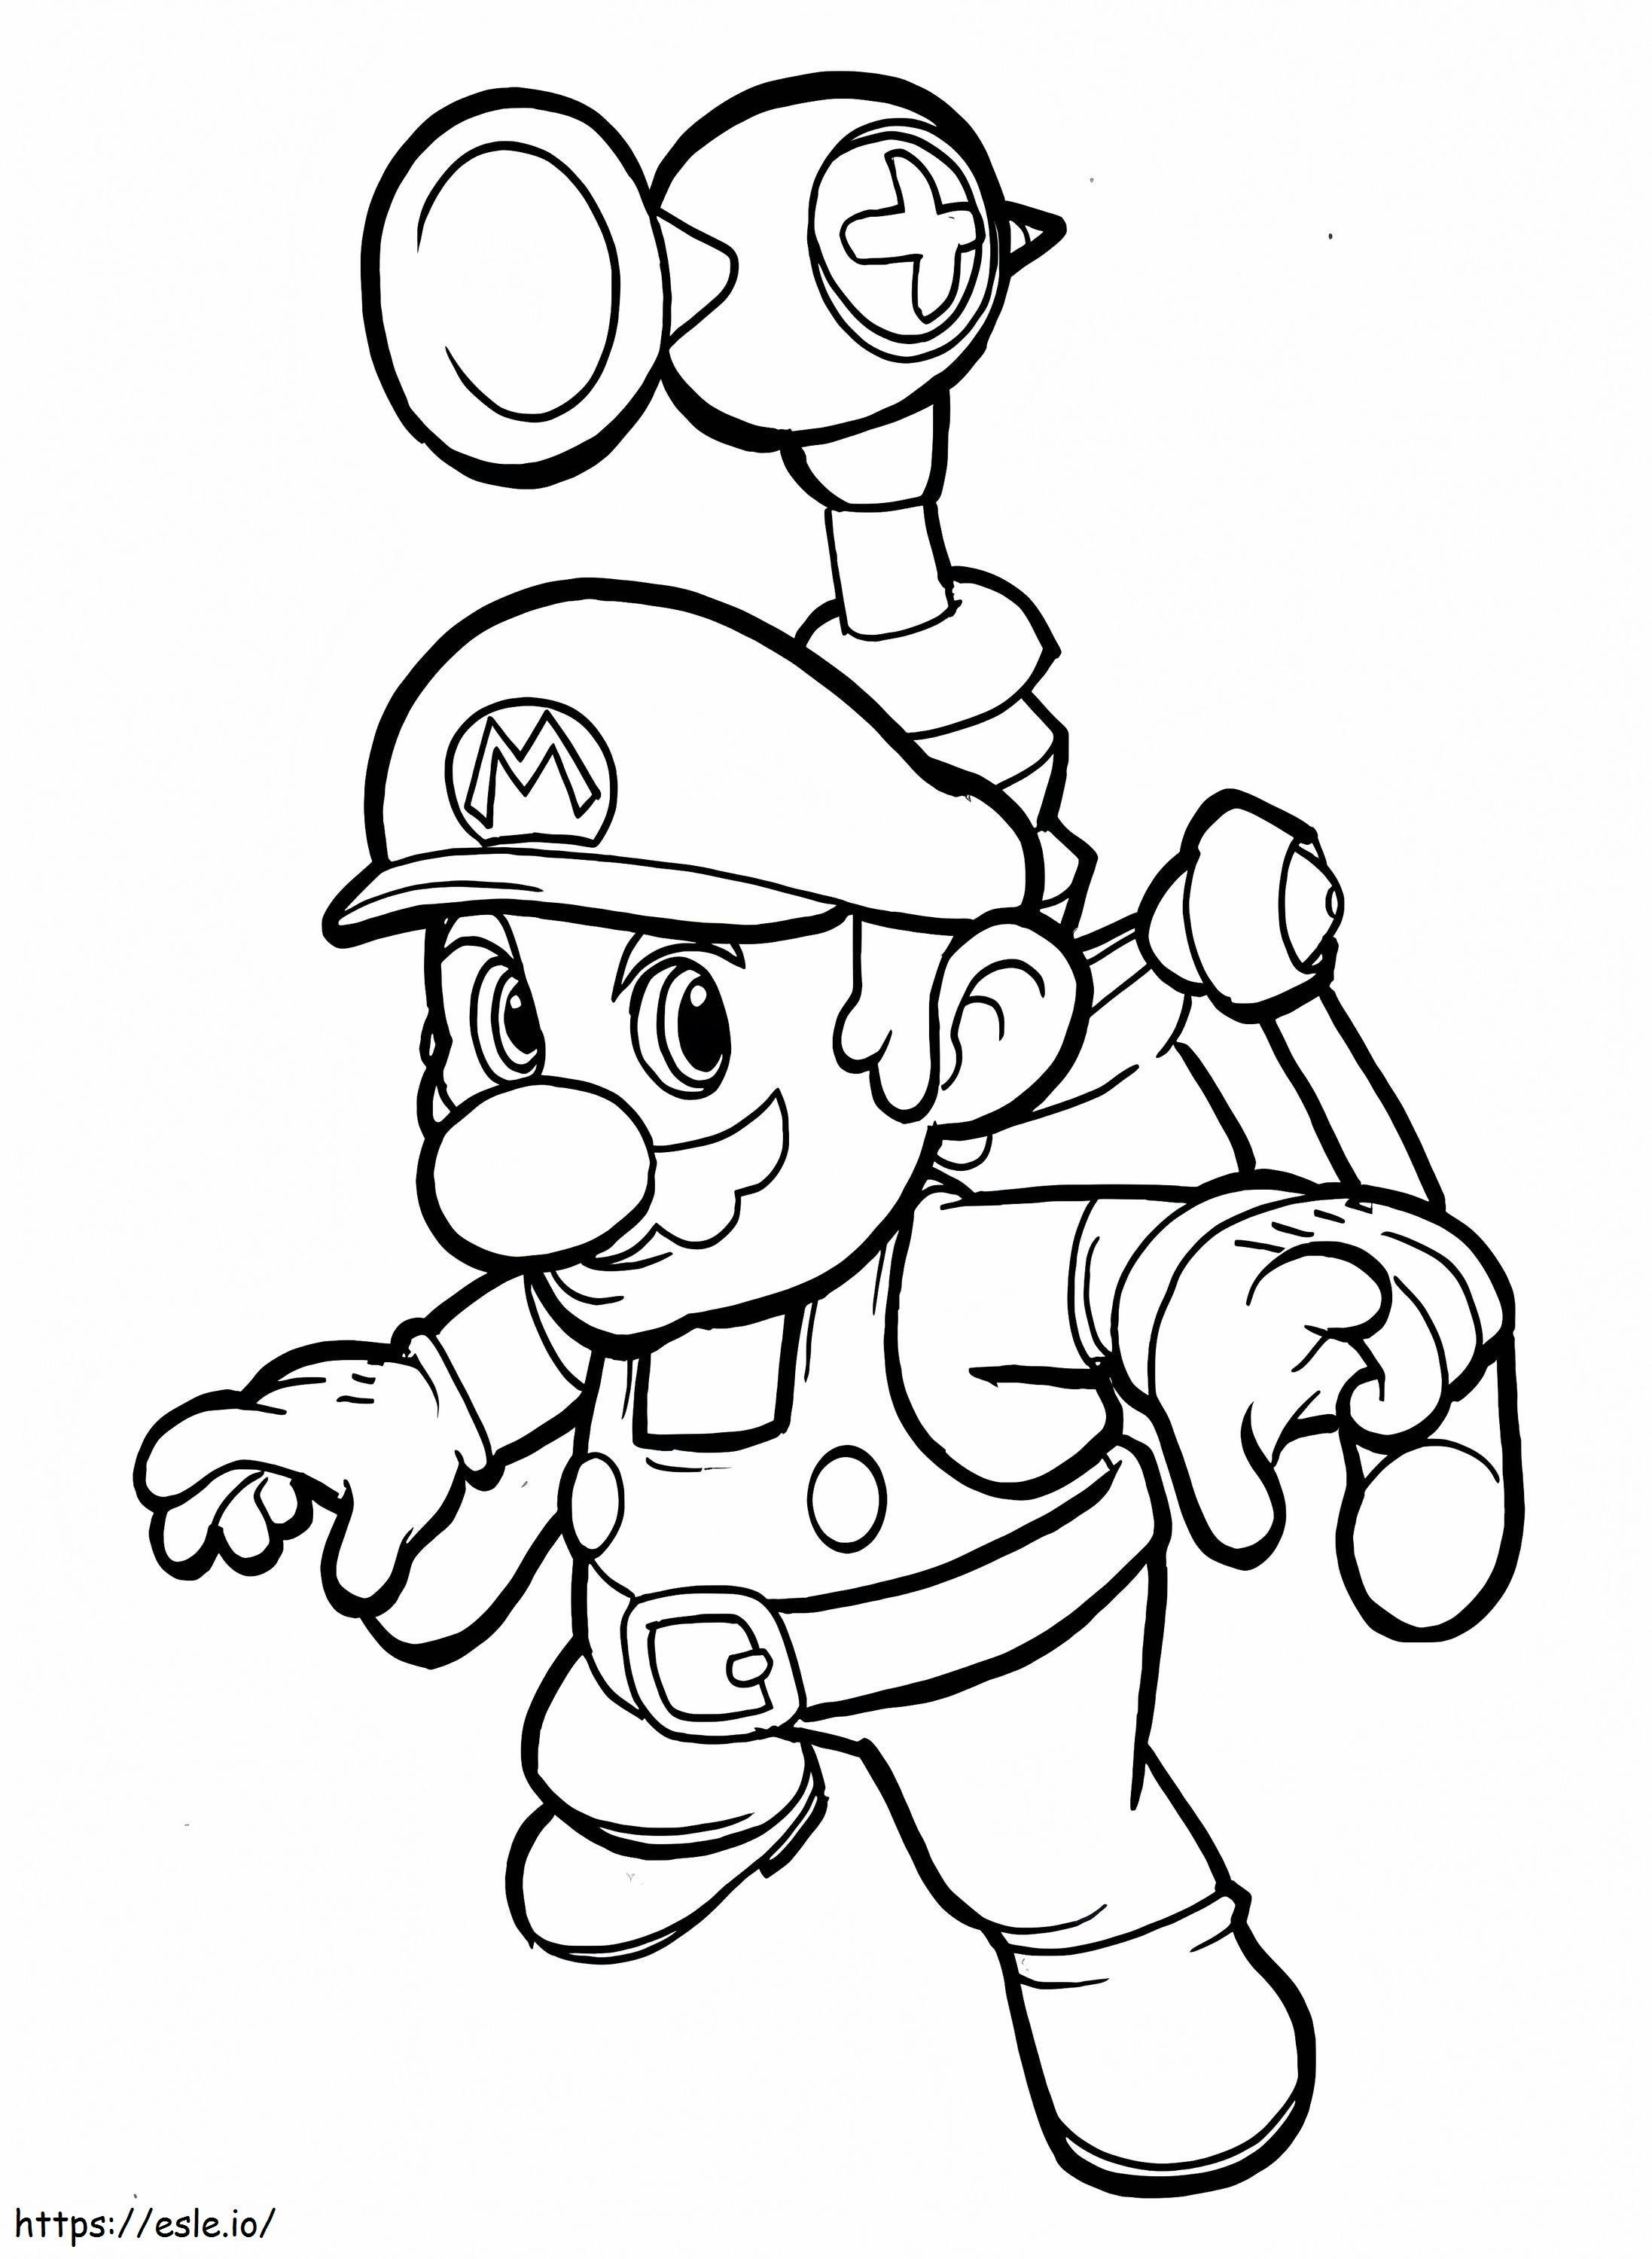 Super Mario 1 749X1024 coloring page